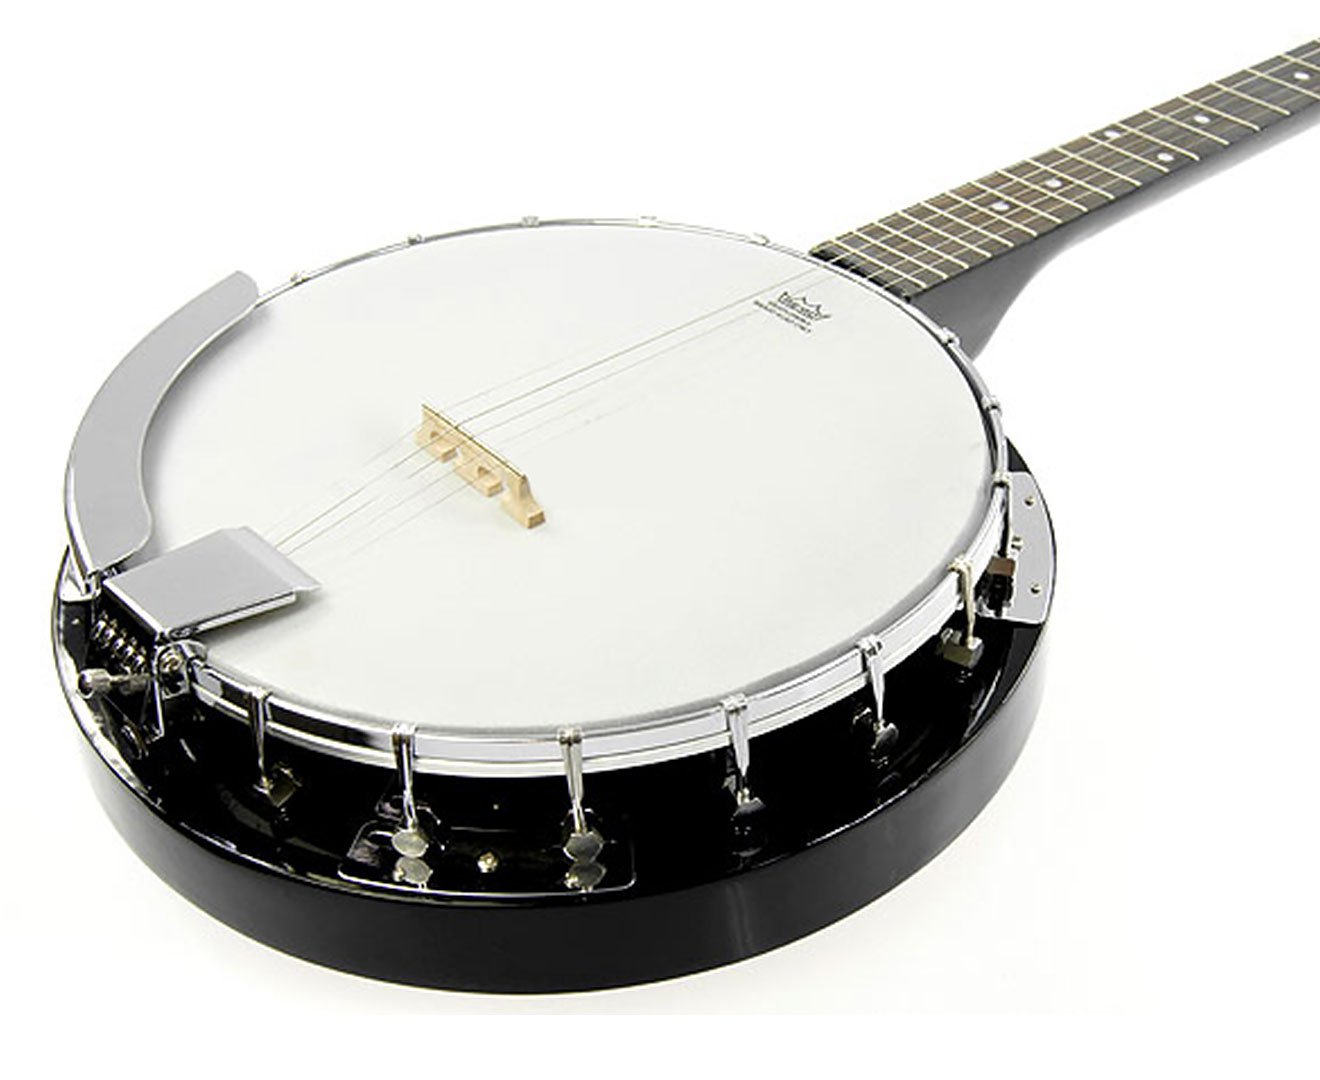 Karrera 5 String Resonator Banjo - Black 2